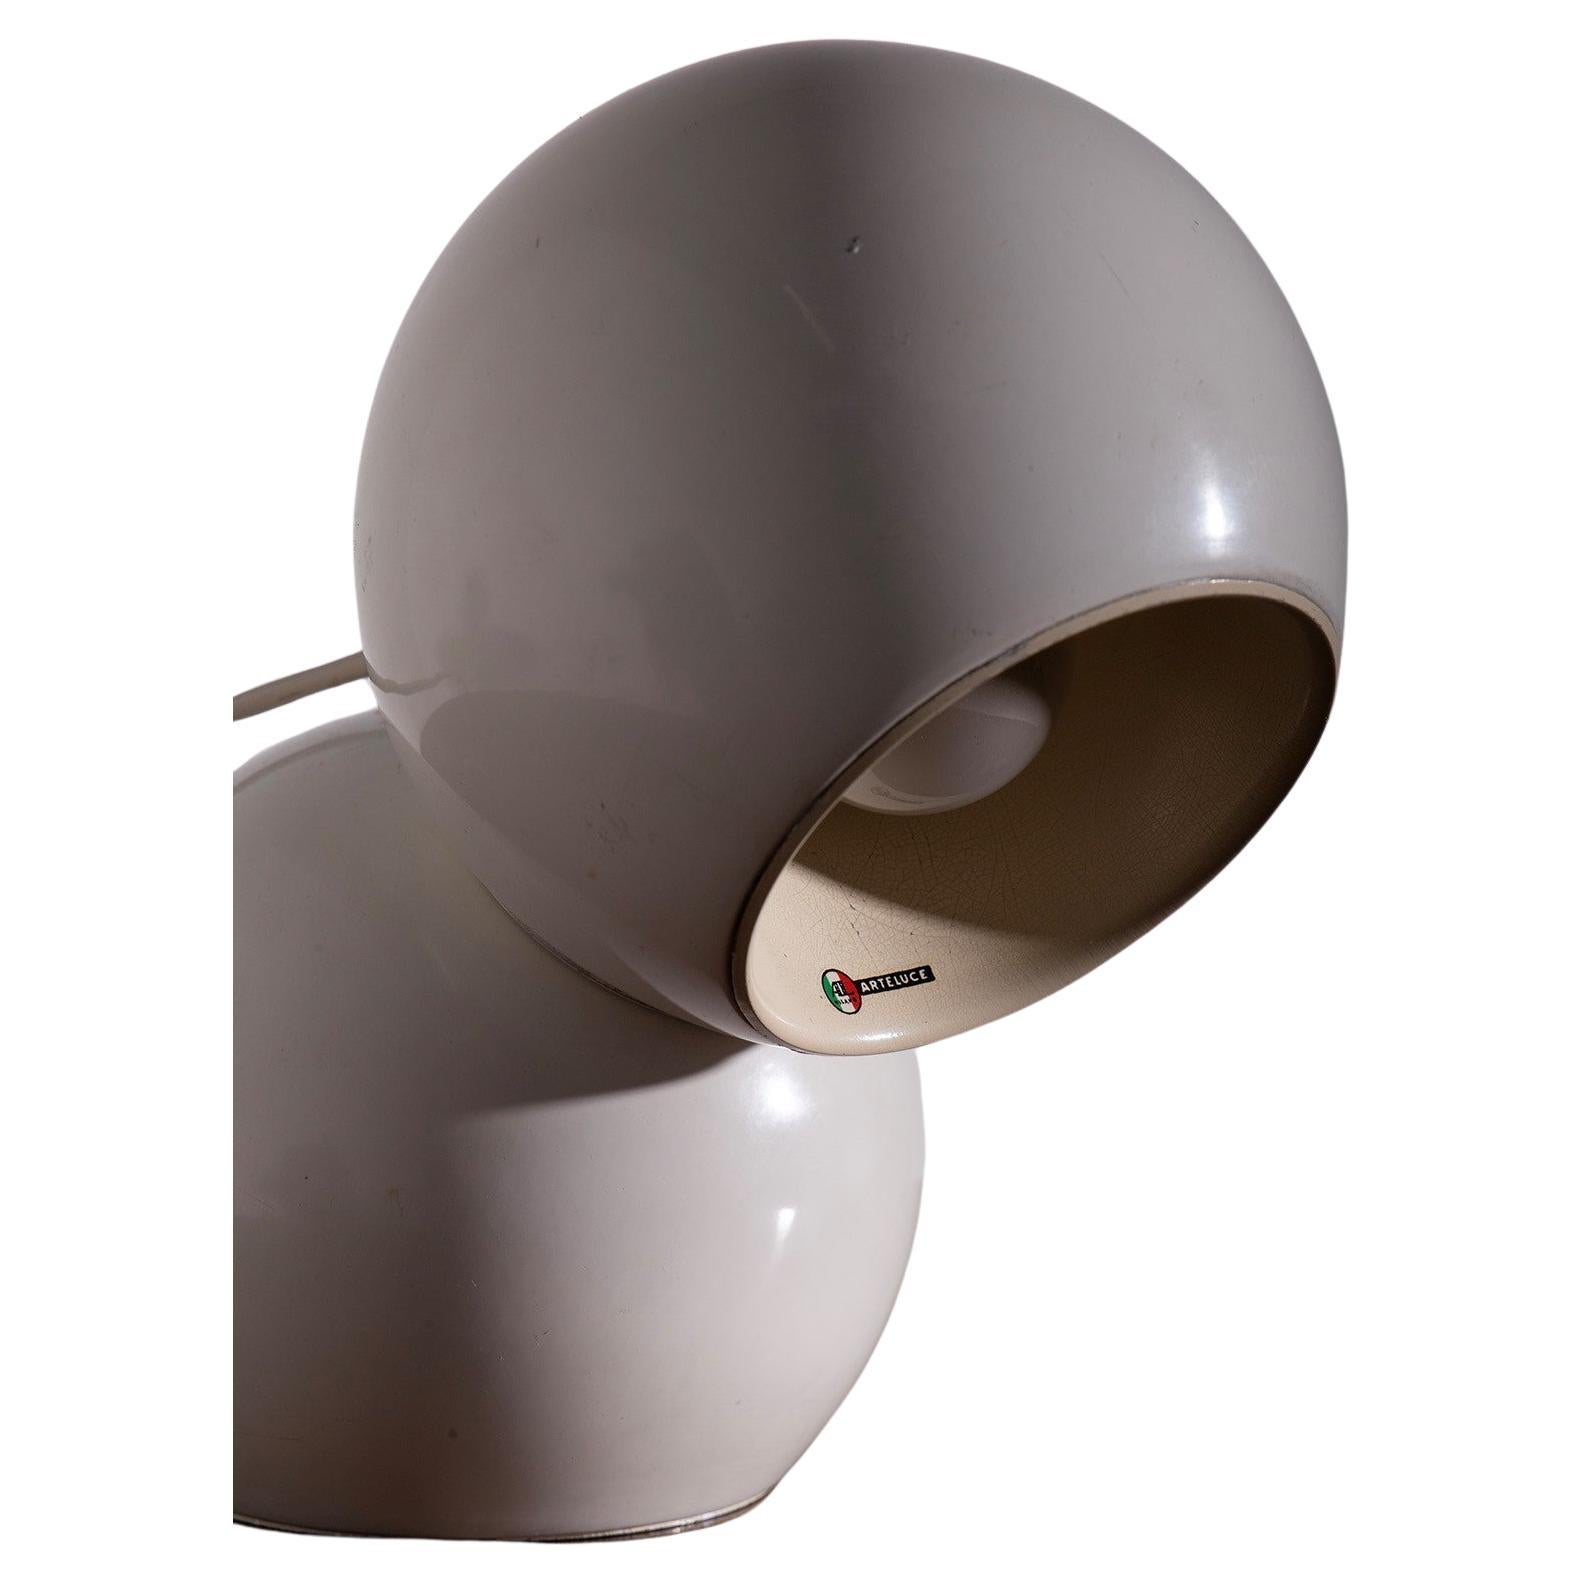 Lampe de table 541 en métal laqué et diffuseur orientable avec système magnétique. Designer Antonio Macchi Cassia . Étiquette originale. Prod. Arteluce, Italie, vers 1960